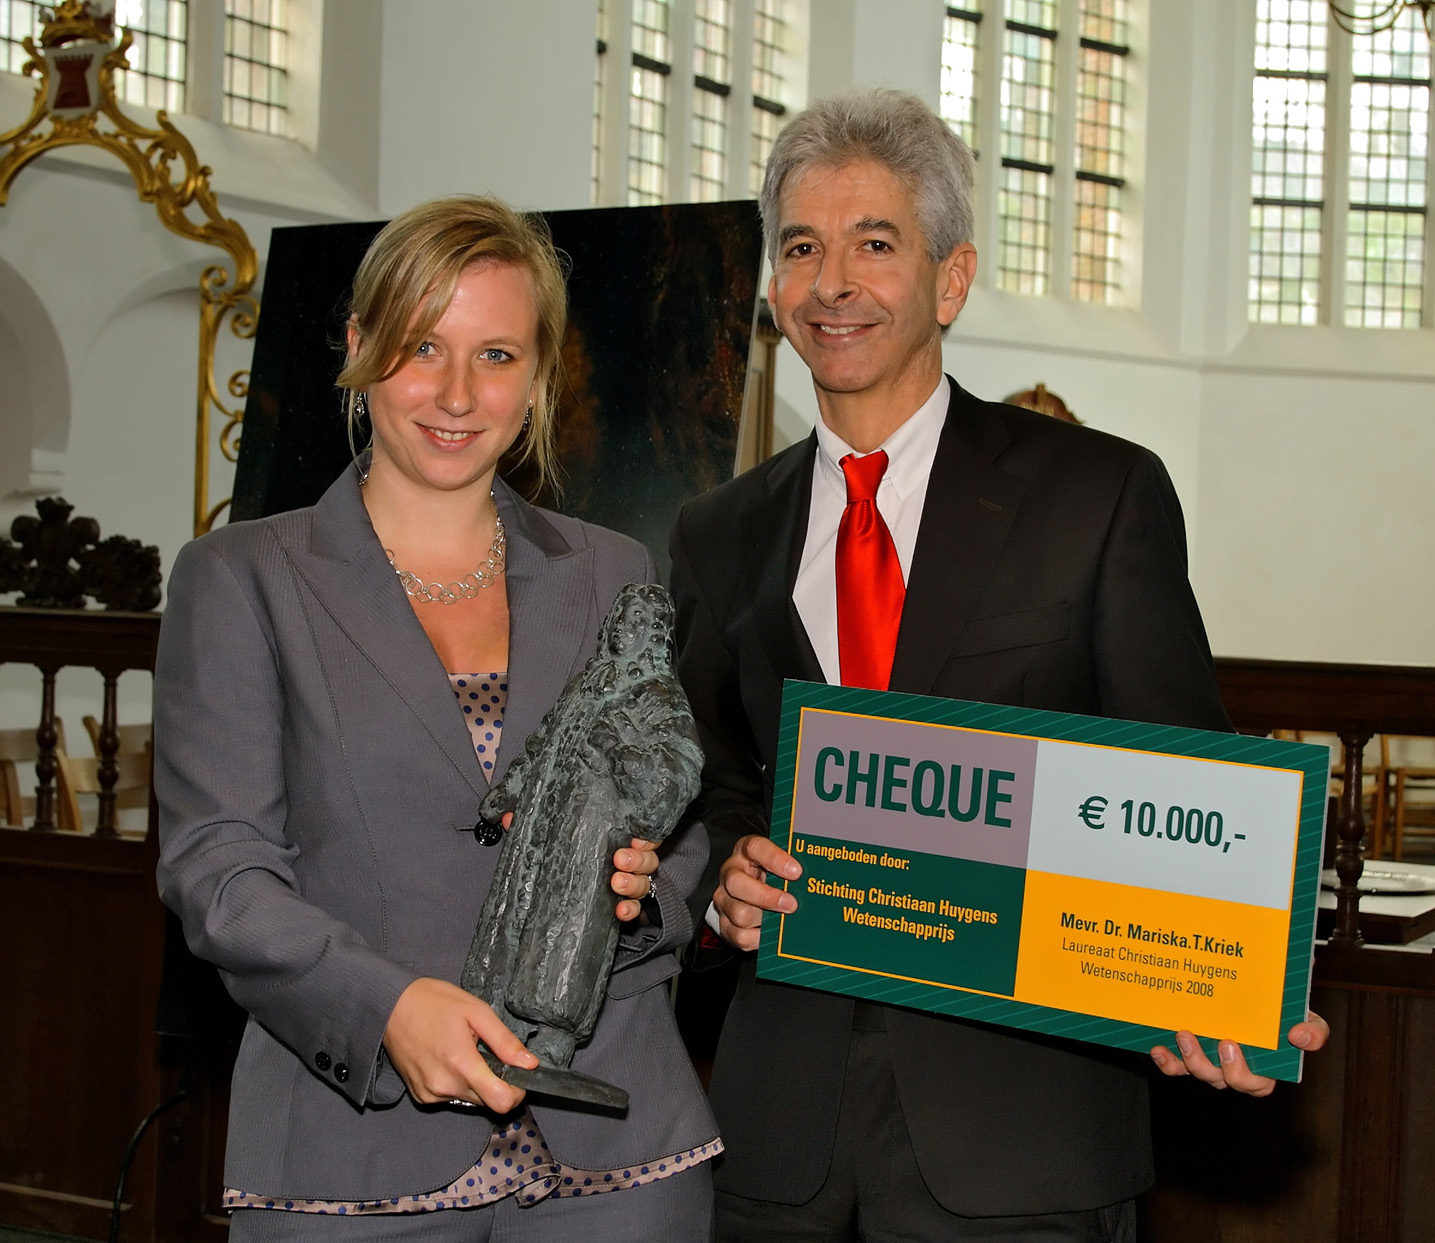 Mariska Kriek ontvangt de Christiaan Huygens Wetenschapsprijs 2008 uit handen van minister Plasterk van OCW (credit: Stichting Christiaan Huygensprijs/ESA)